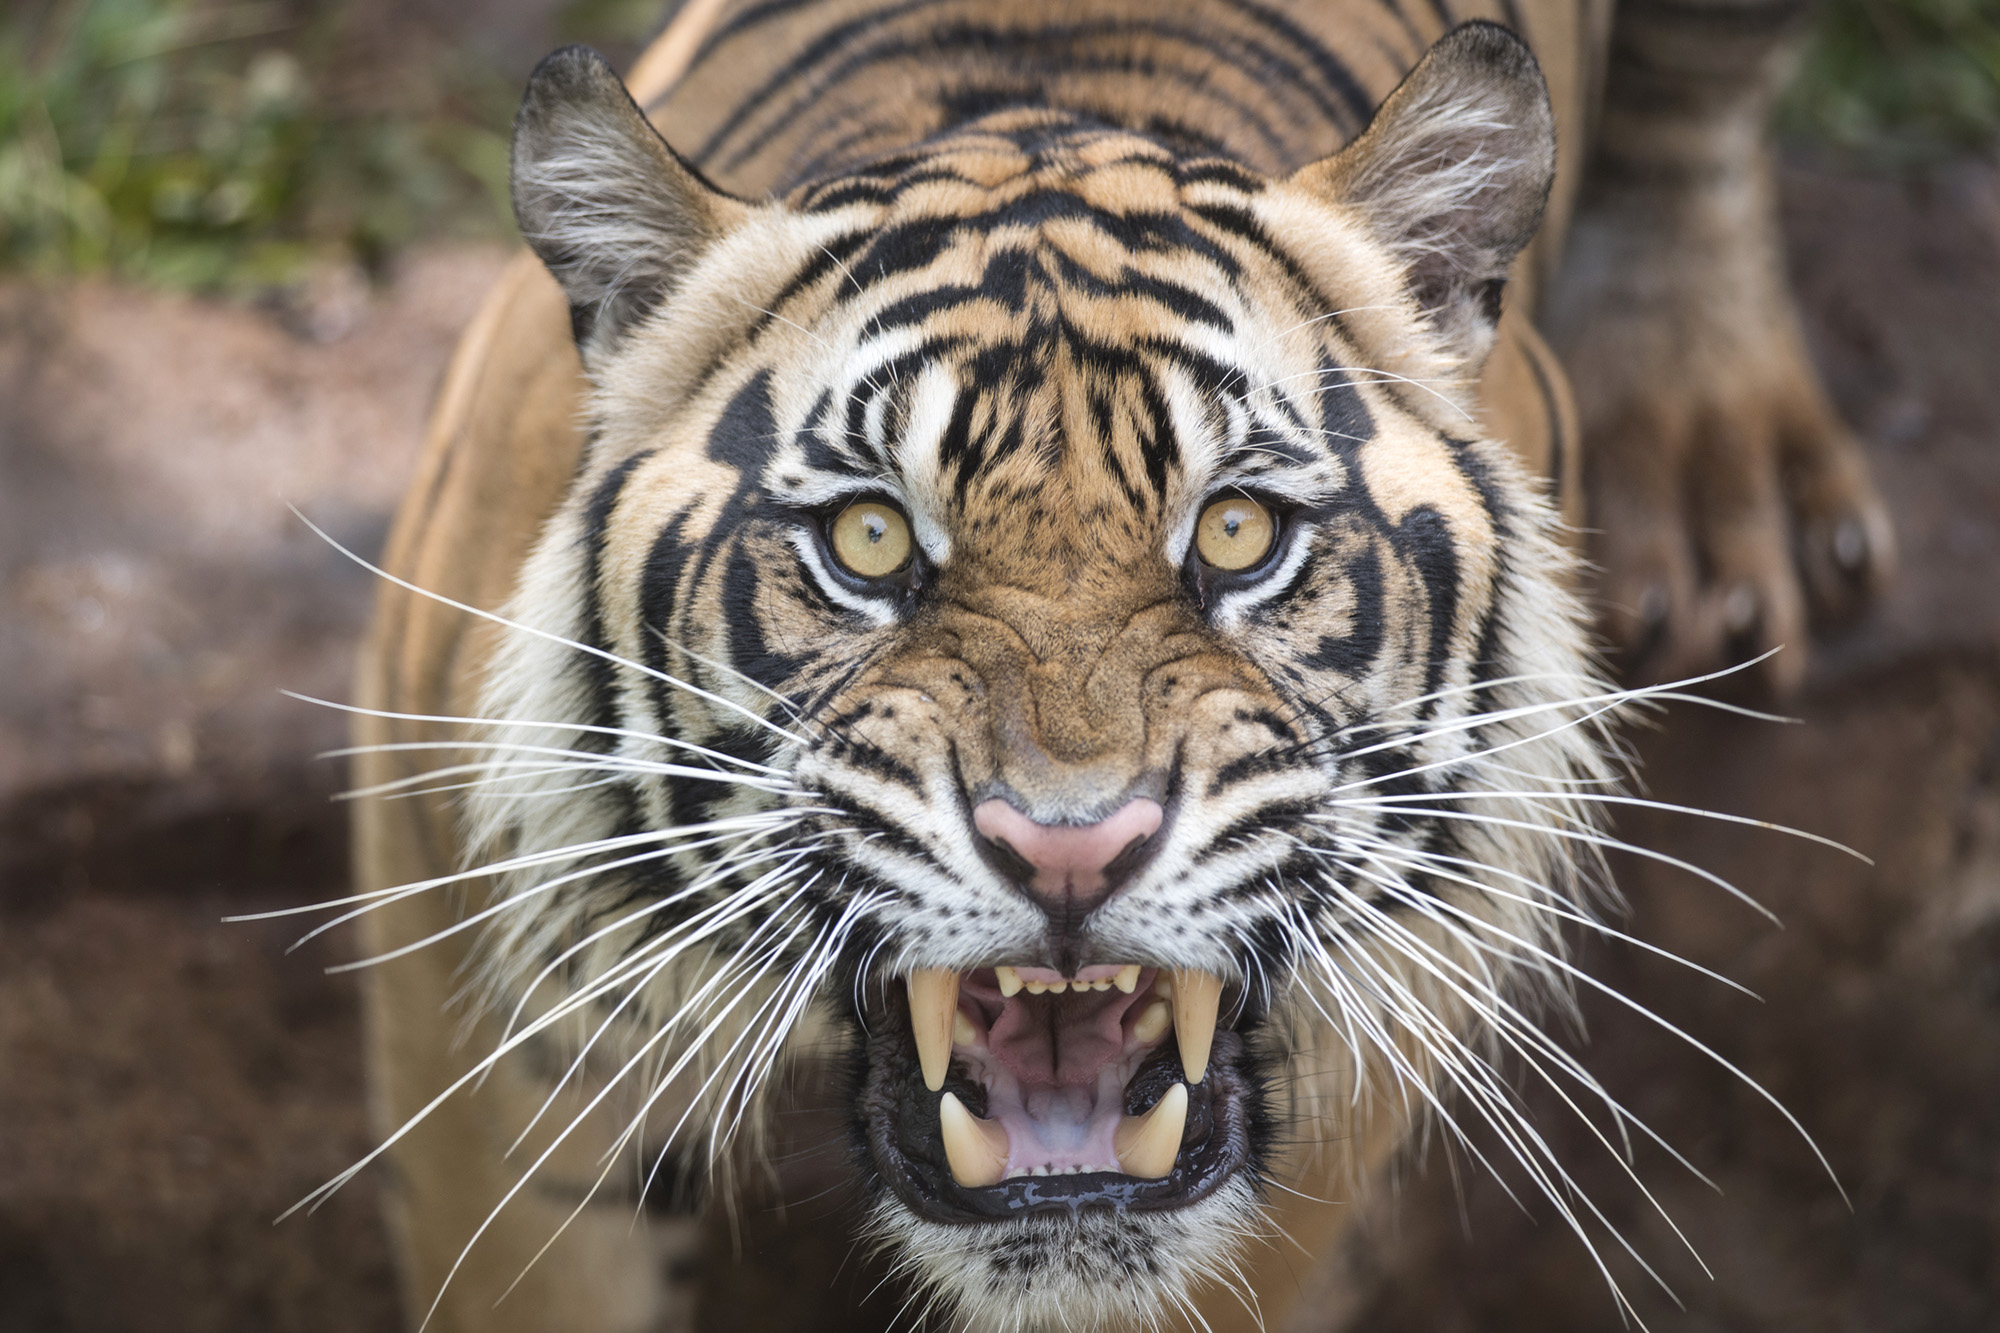 Việc giết một loài ăn thịt lớn khác bằng vũ khí trước mặt một con hổ có khiến nó sợ con người không? - Ảnh 3.